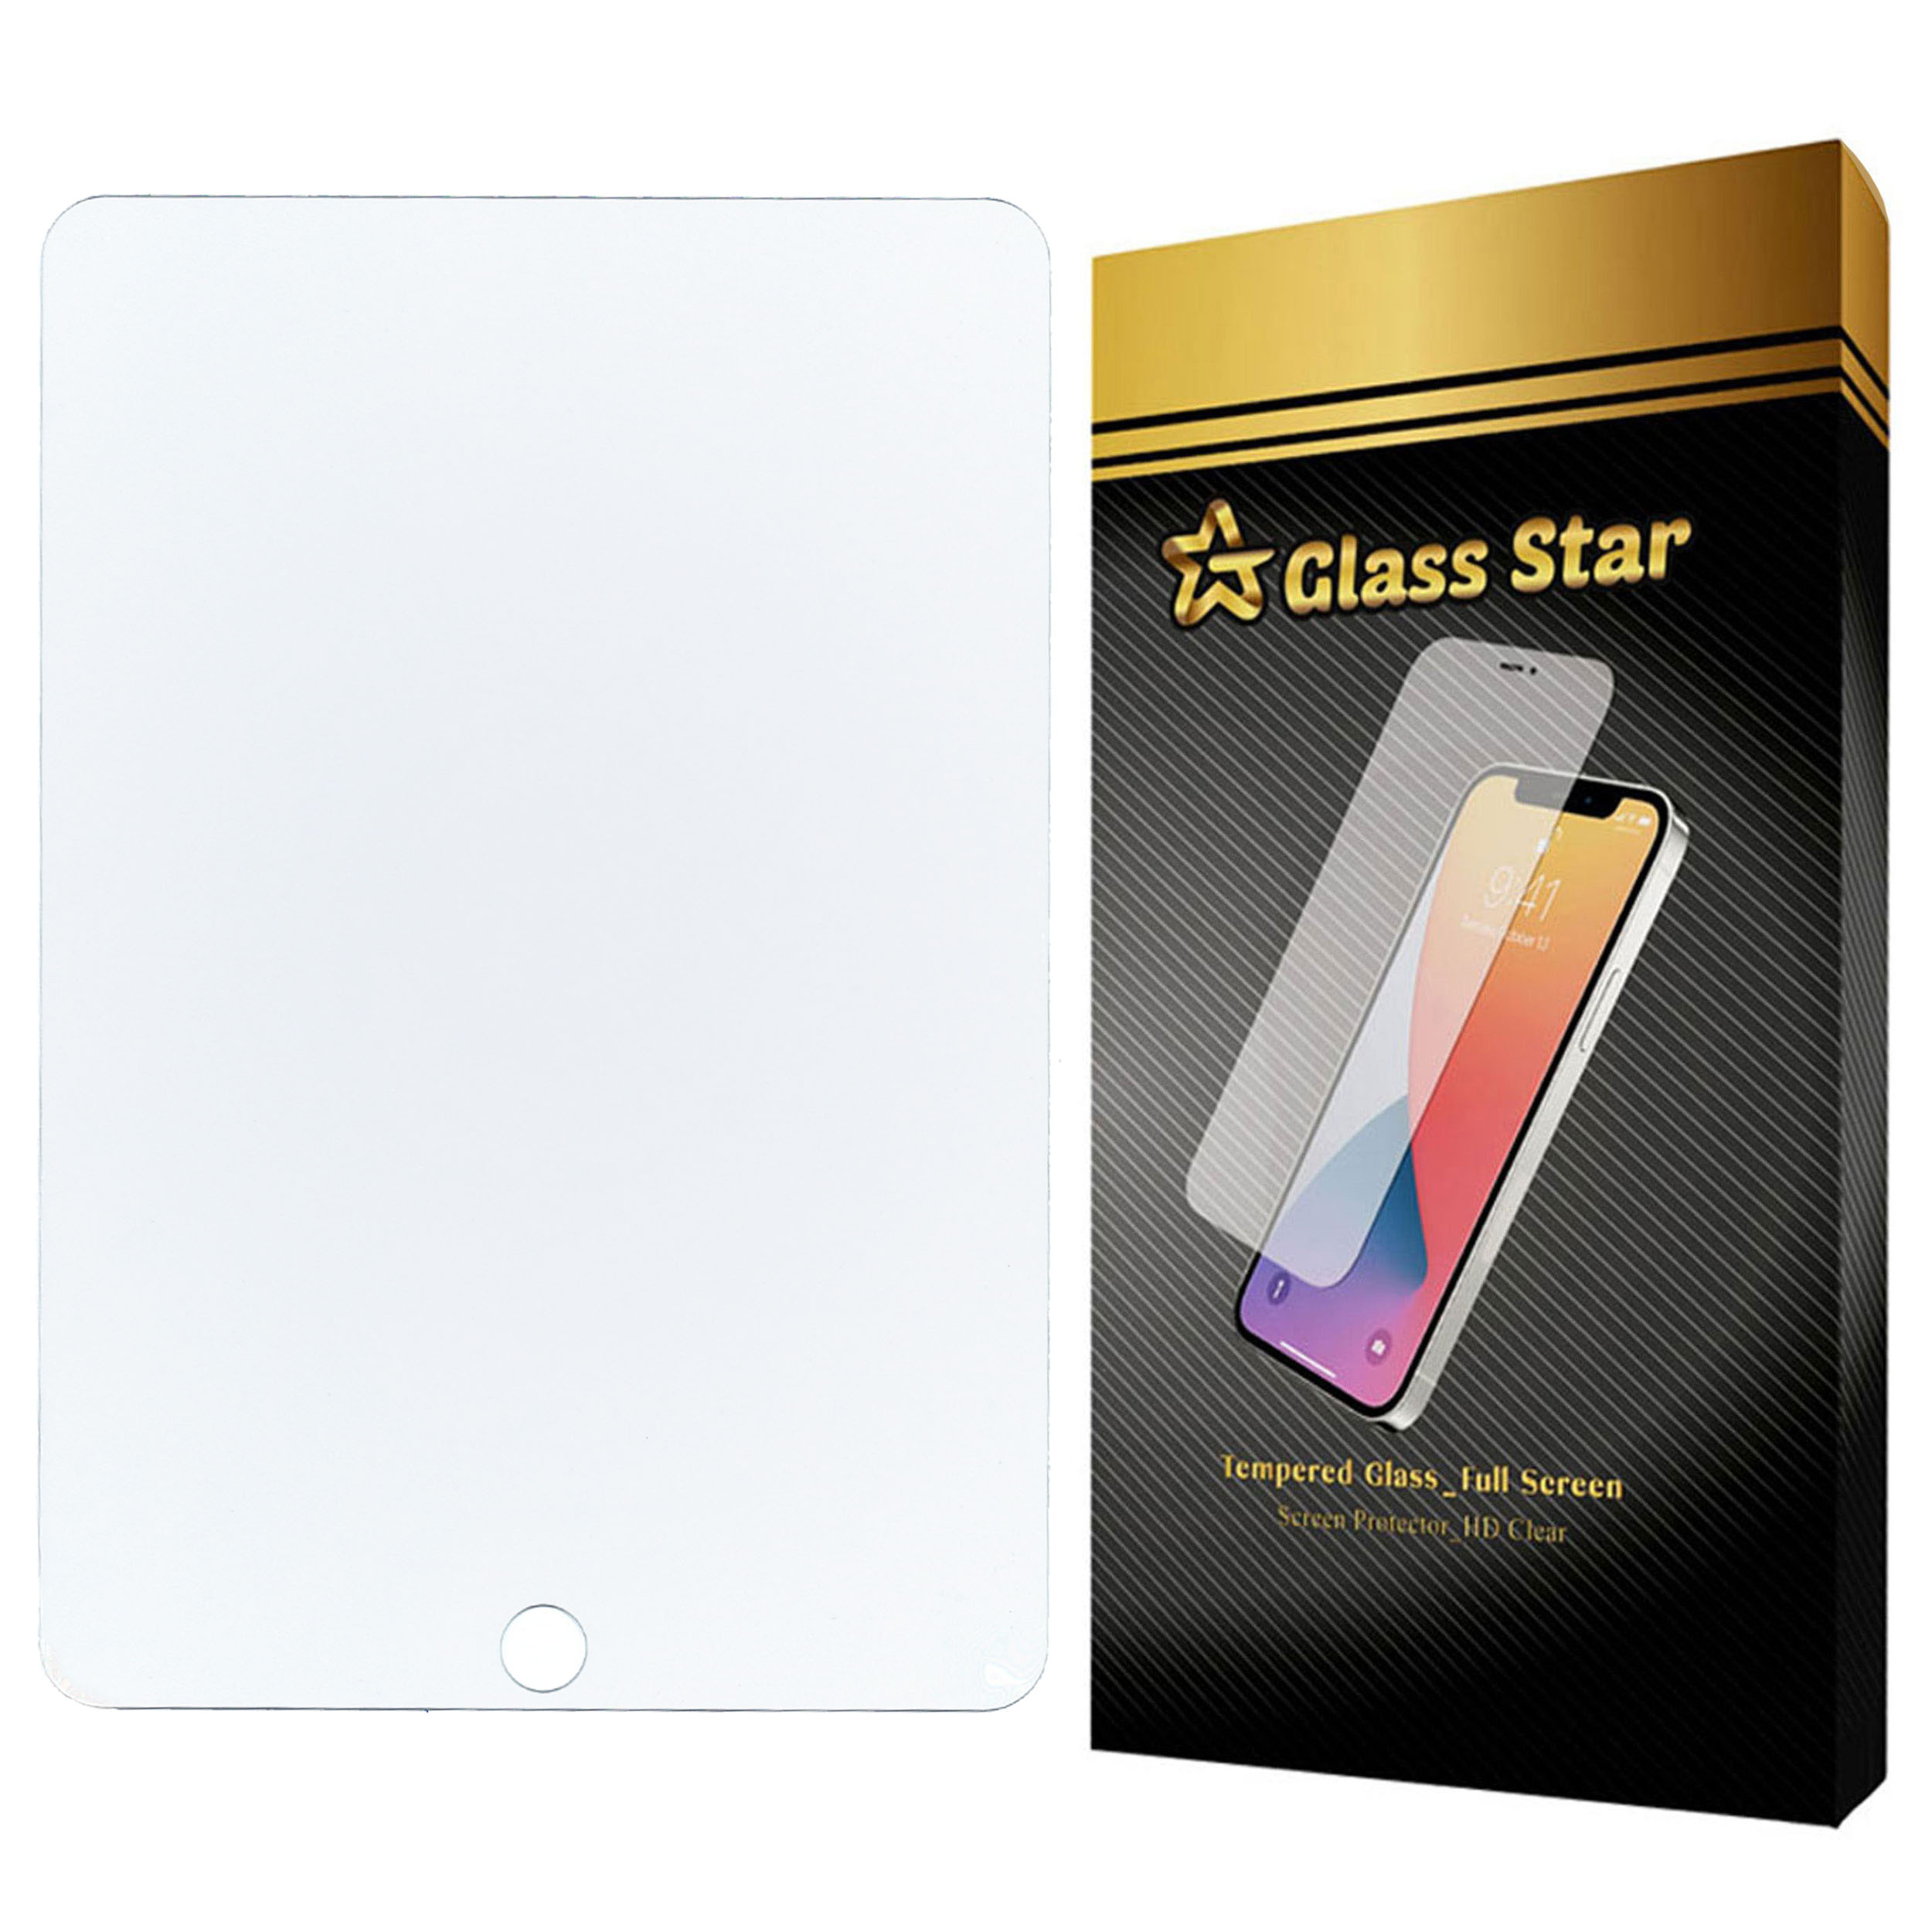 محافظ صفحه نمایش گلس استار مدل TS1GA مناسب برای تبلت اپل iPad mini 5 / 2019